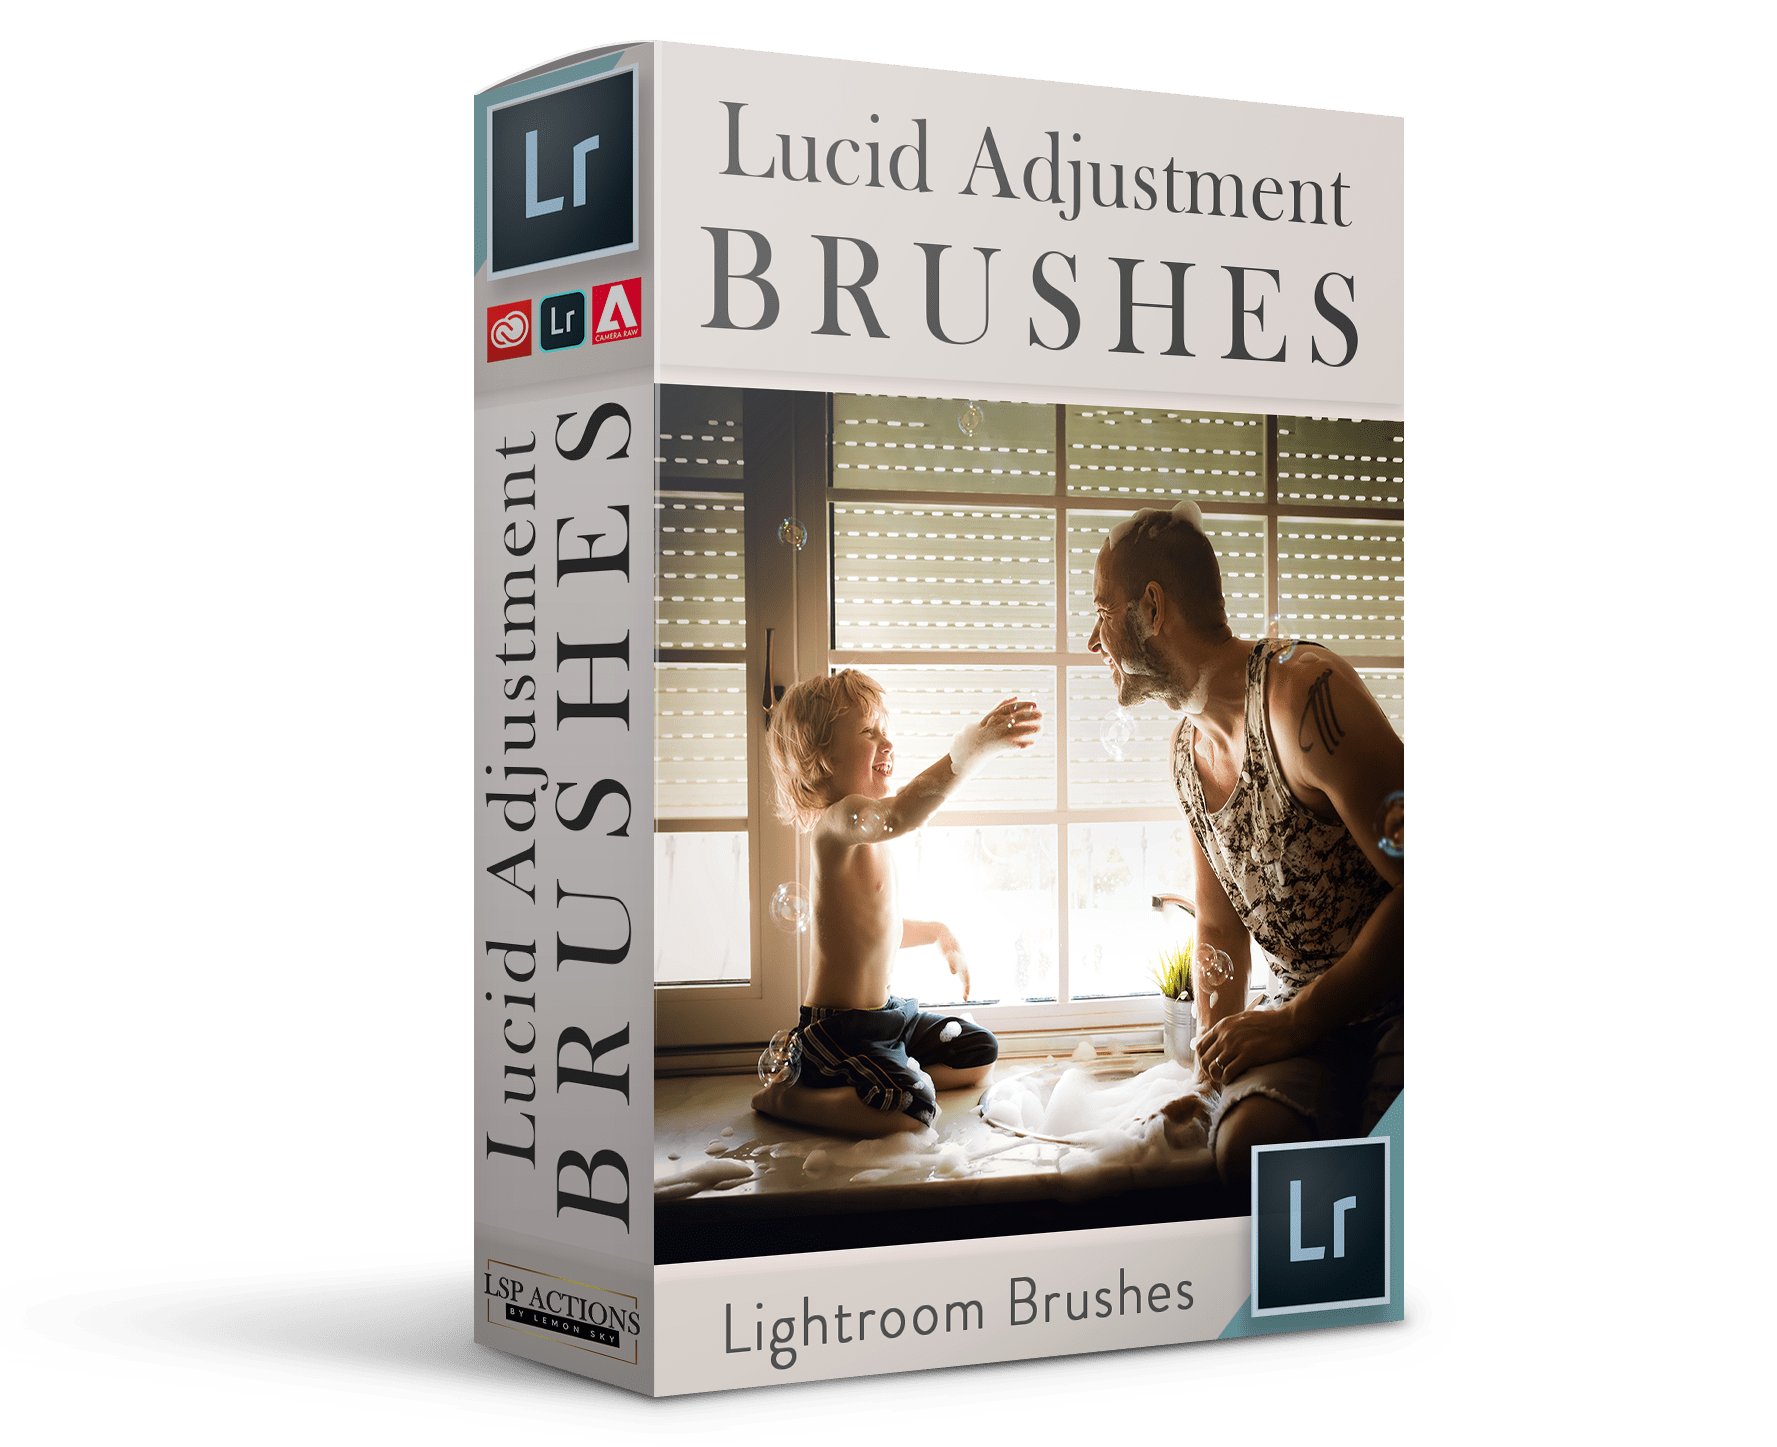 The Lucid Adjustment Brushes for LIghtroom Classic Lightroom Brushes